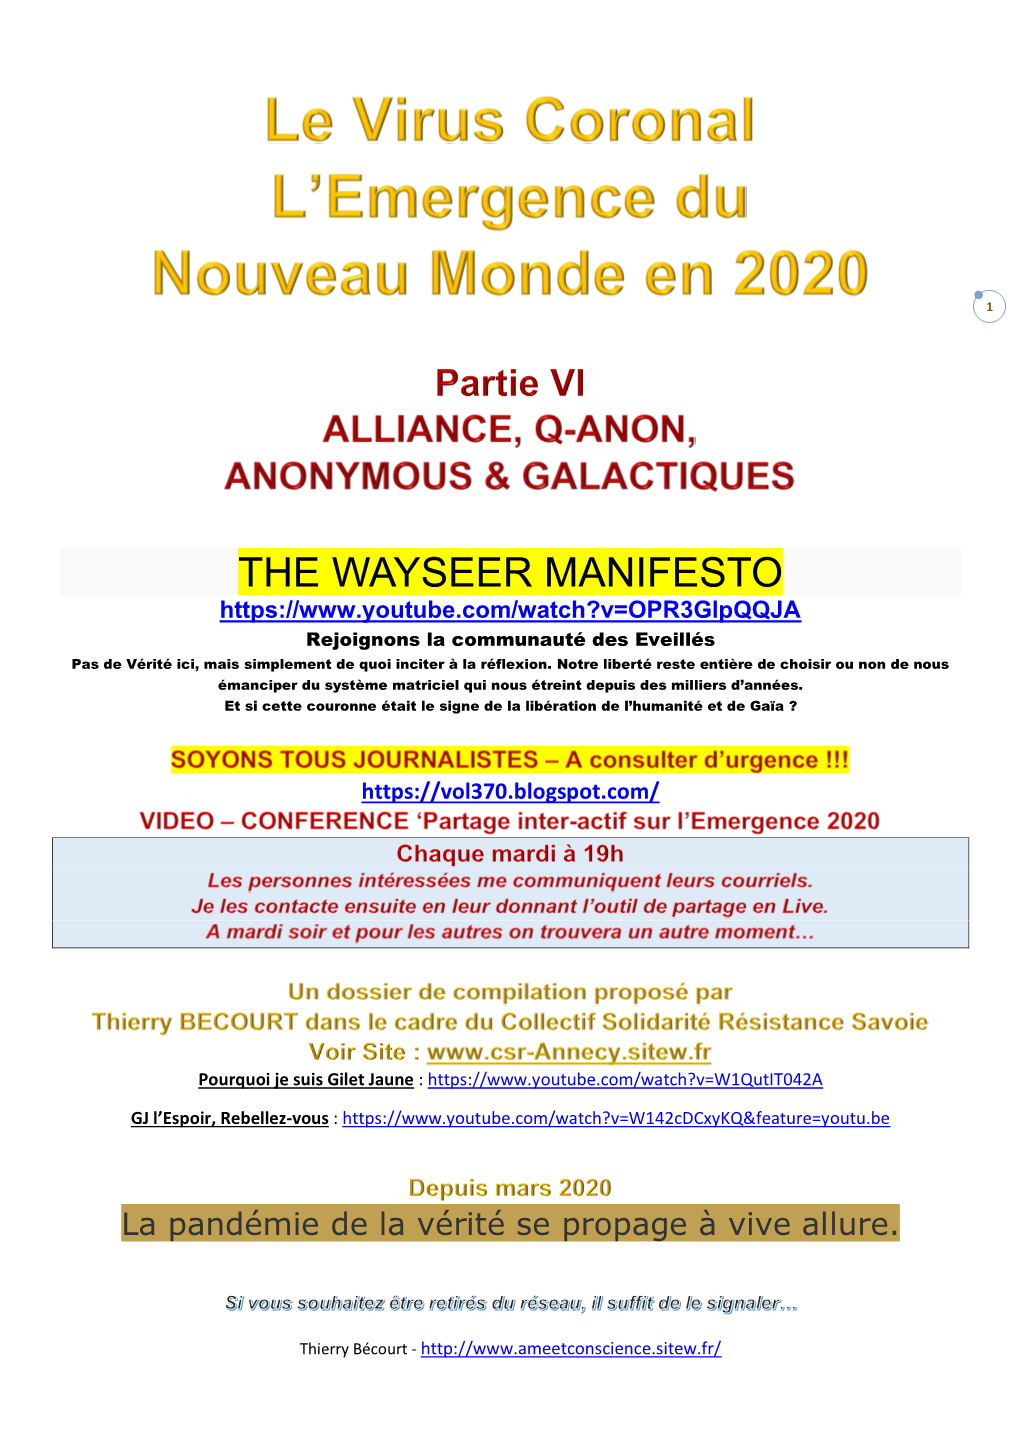 The Wayseer Manifesto